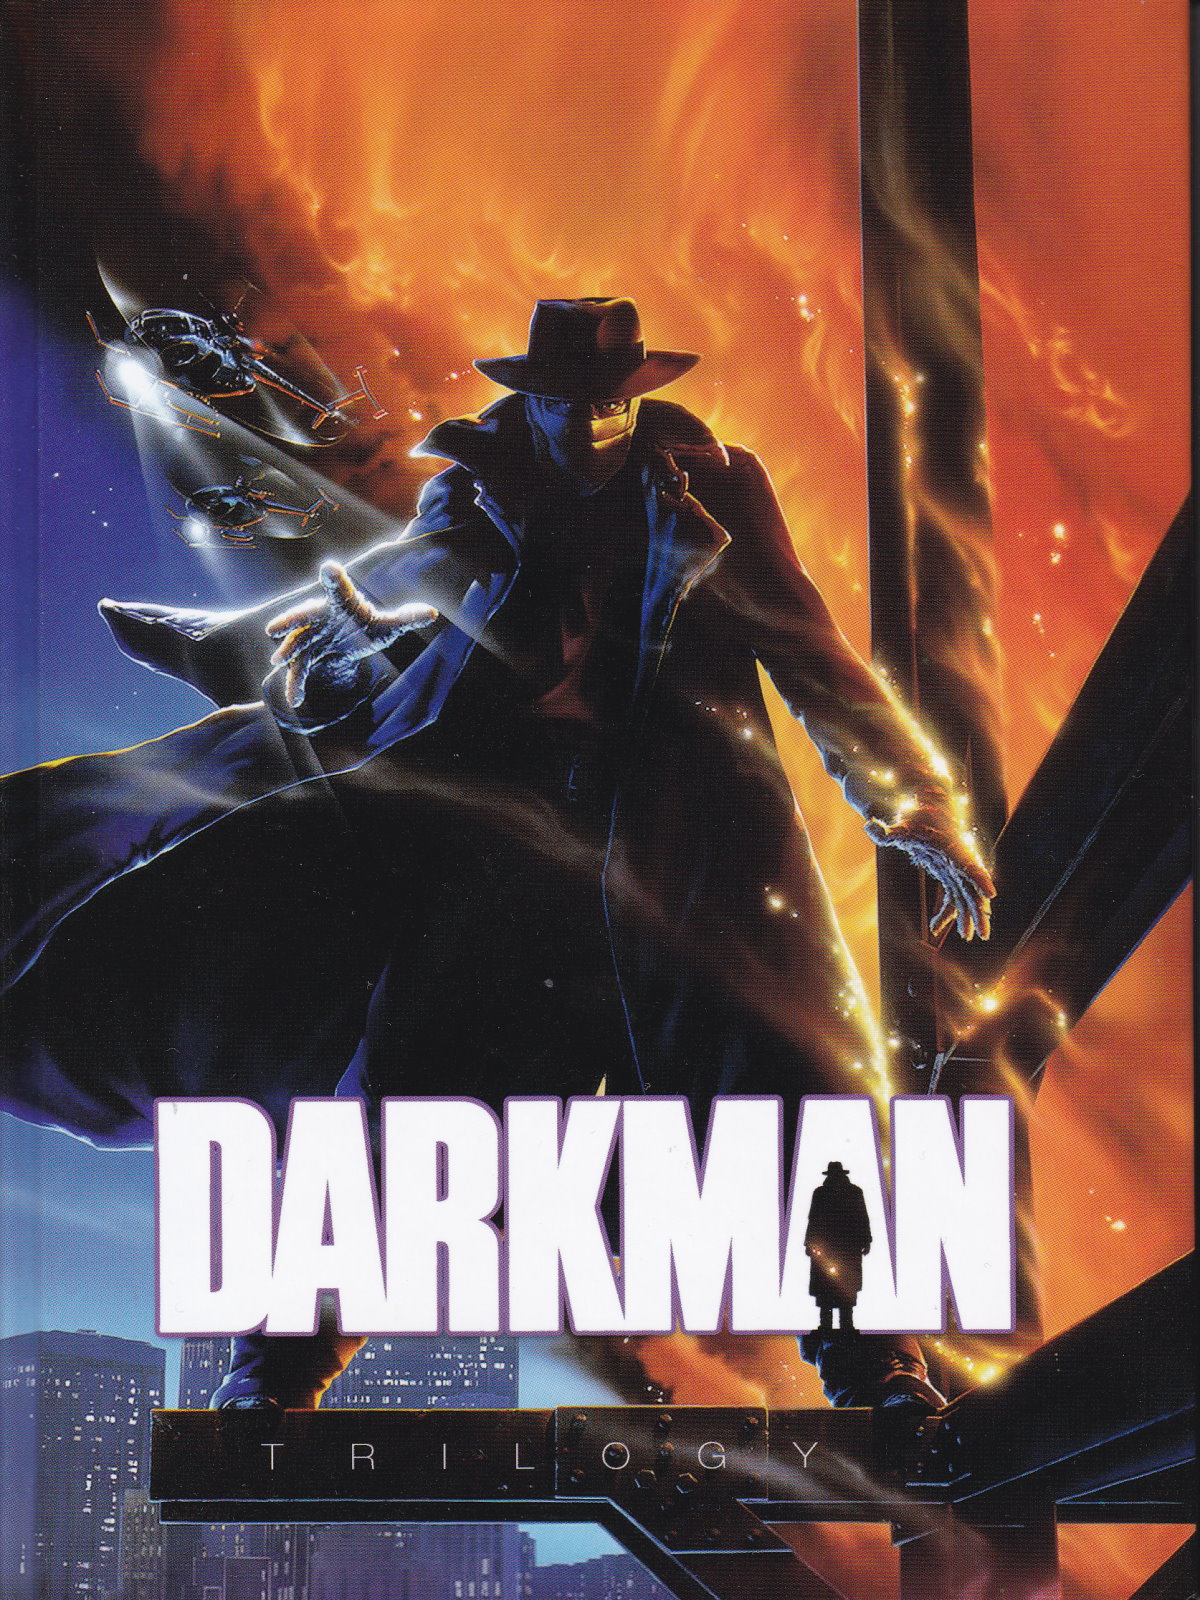 Cover - Darkman.jpg